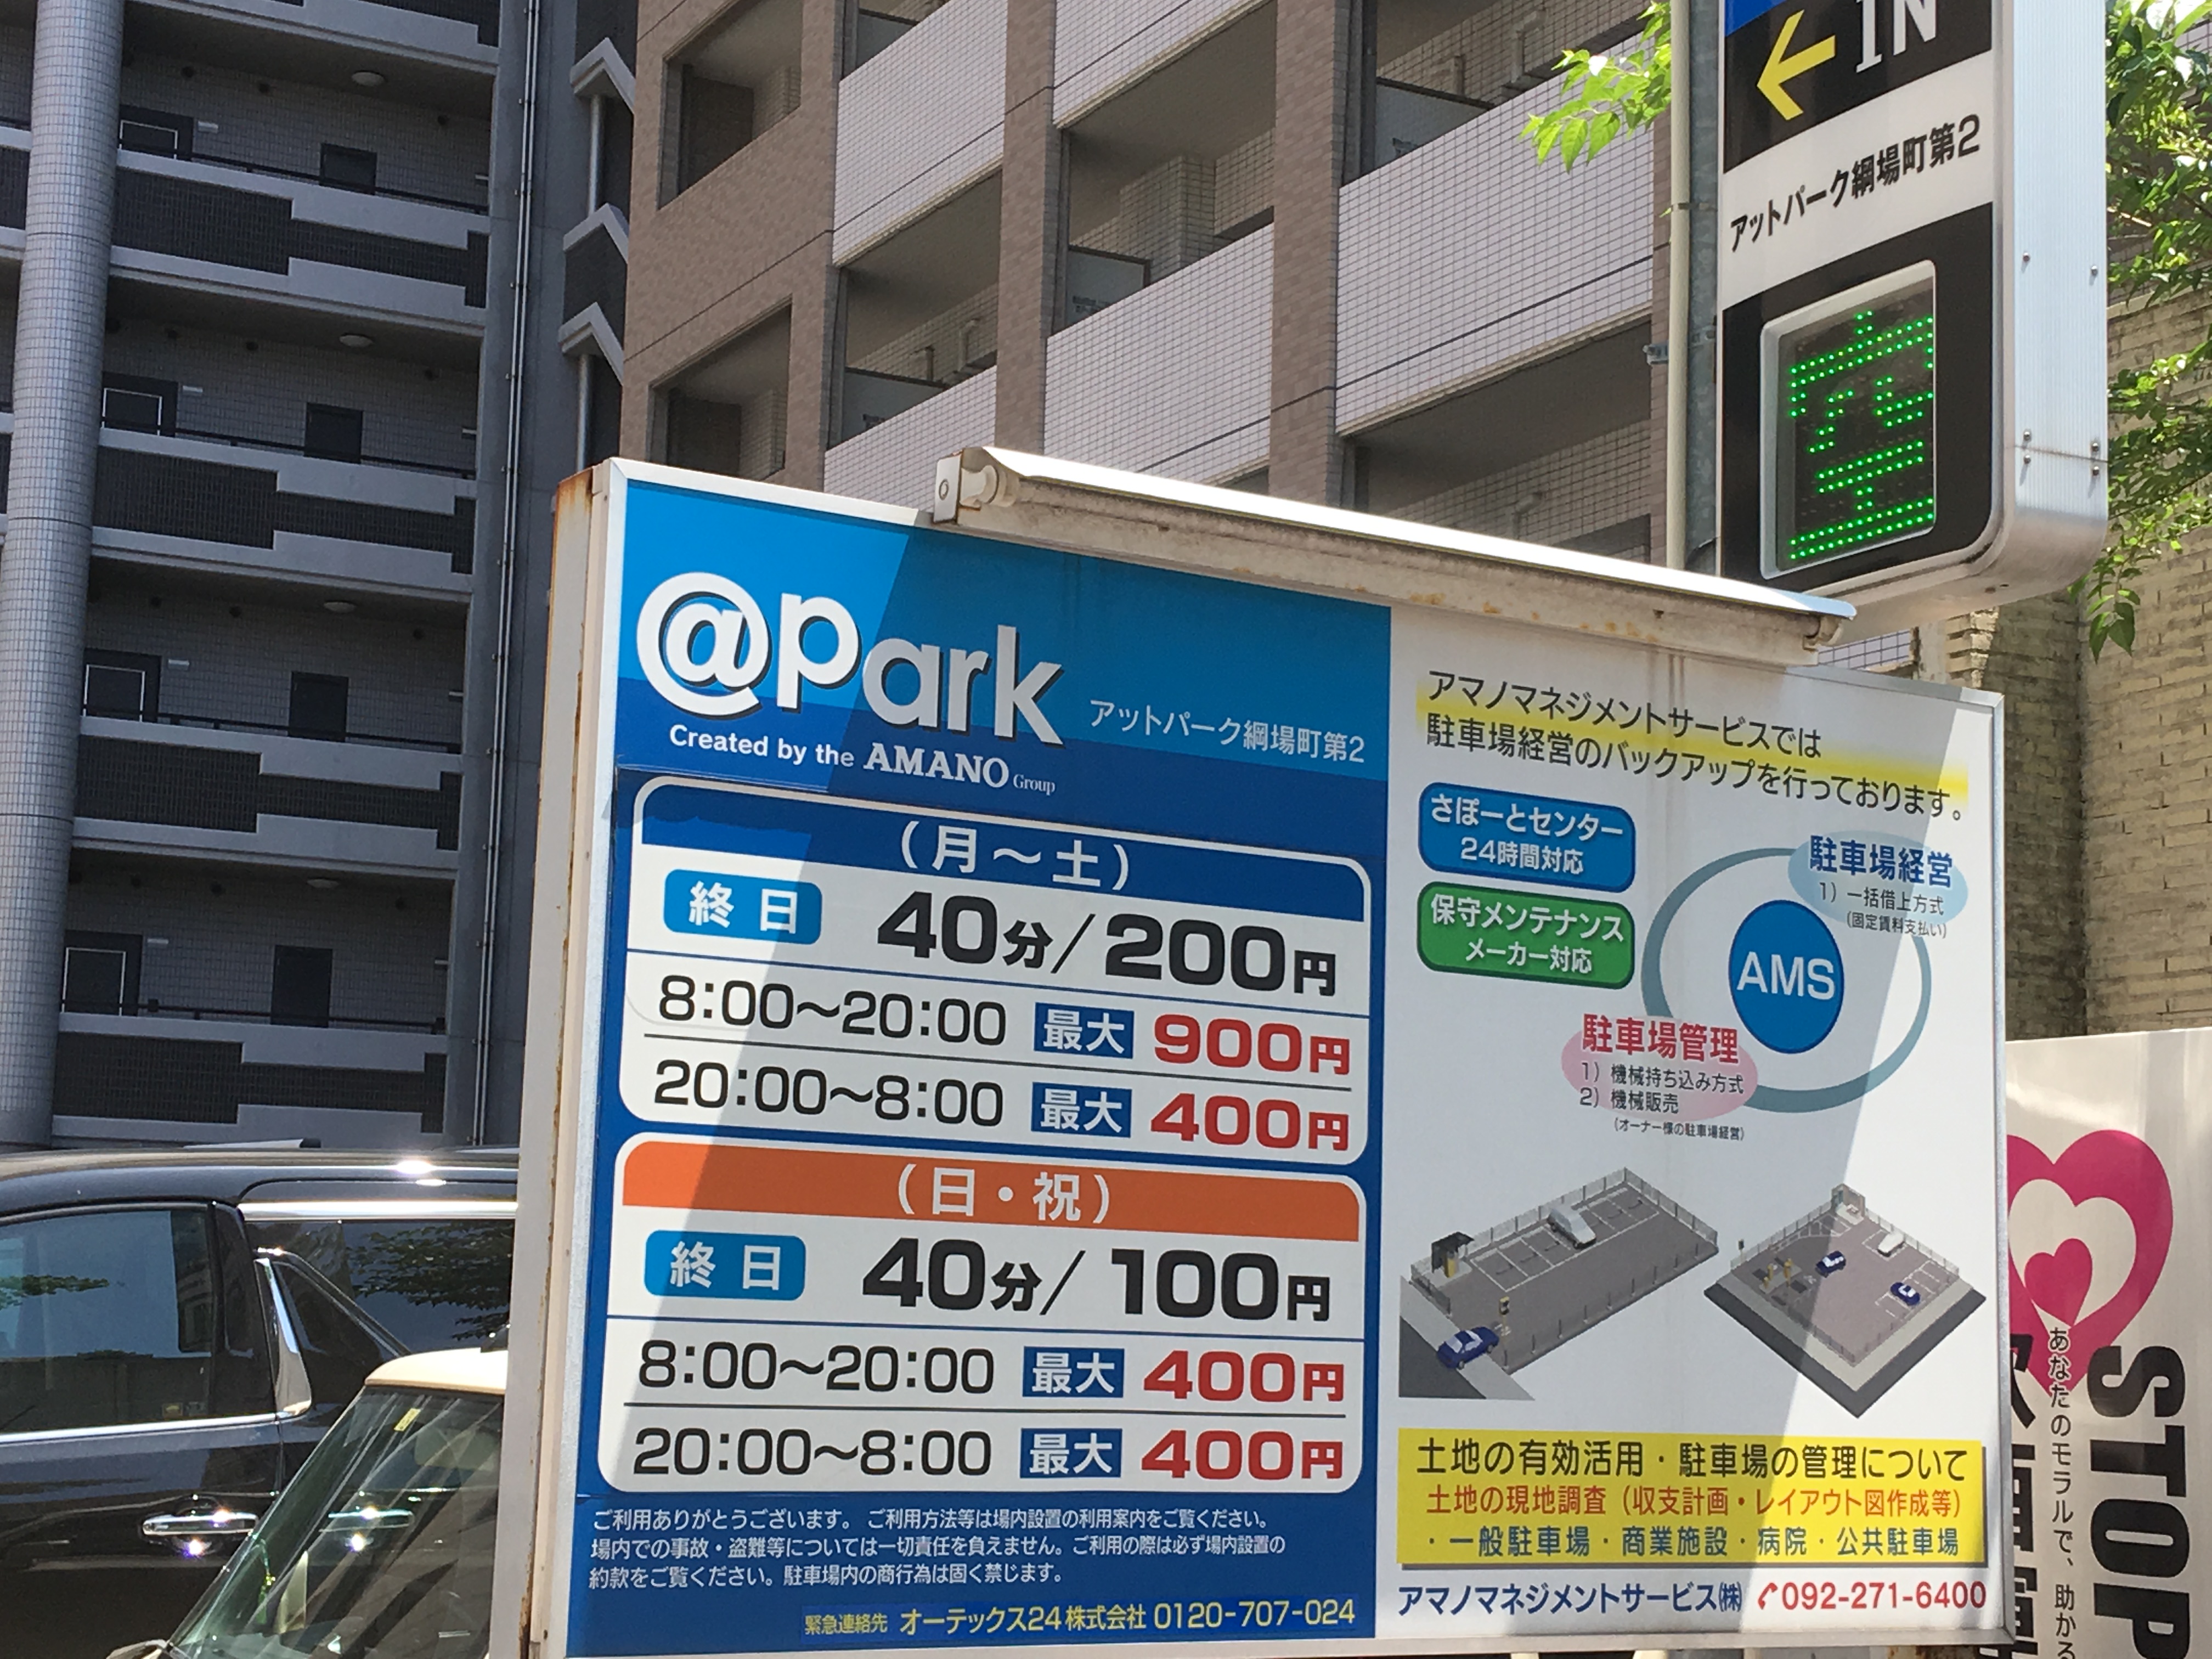 アンパンマンミュージアム福岡に行くときの安い駐車場はココ 混雑状況も こたねこのおでかけ福岡